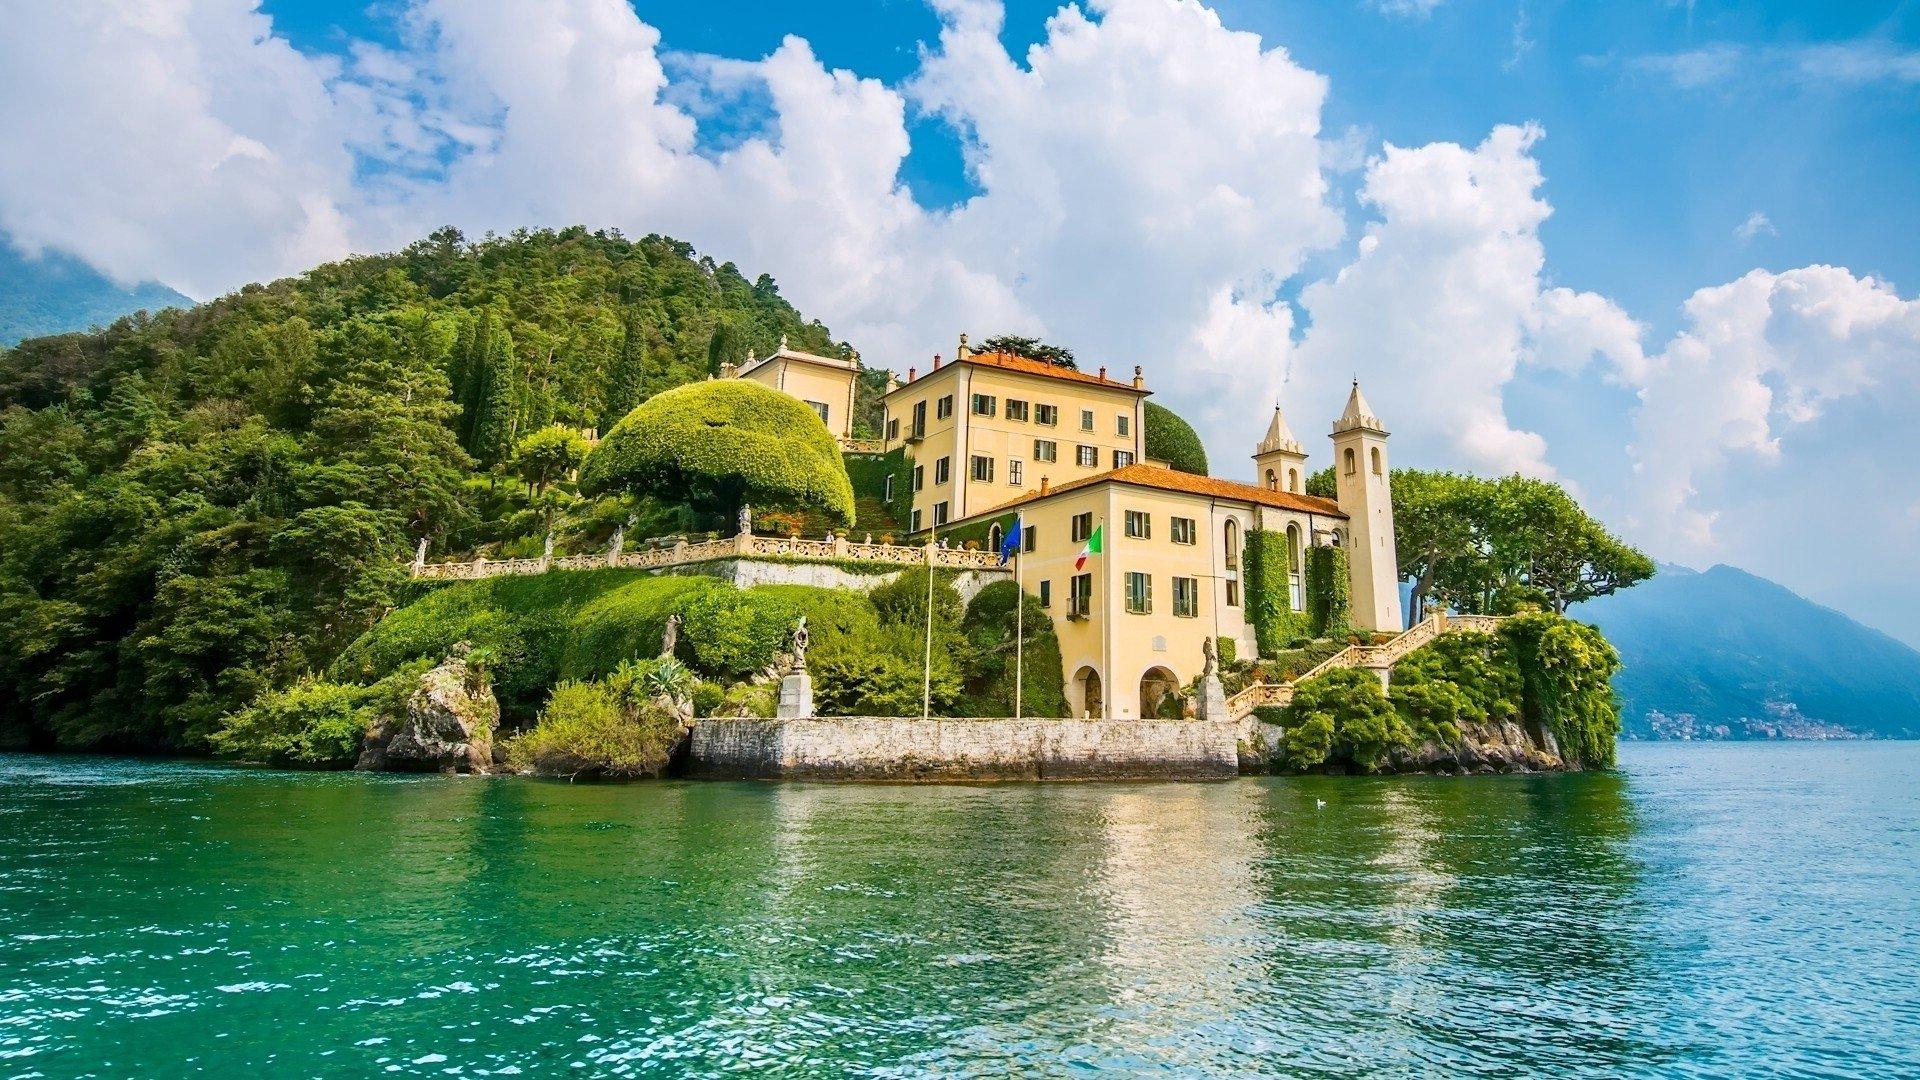 Villa Balbianello on Lake Como in Italy HD Wallpaper. Background